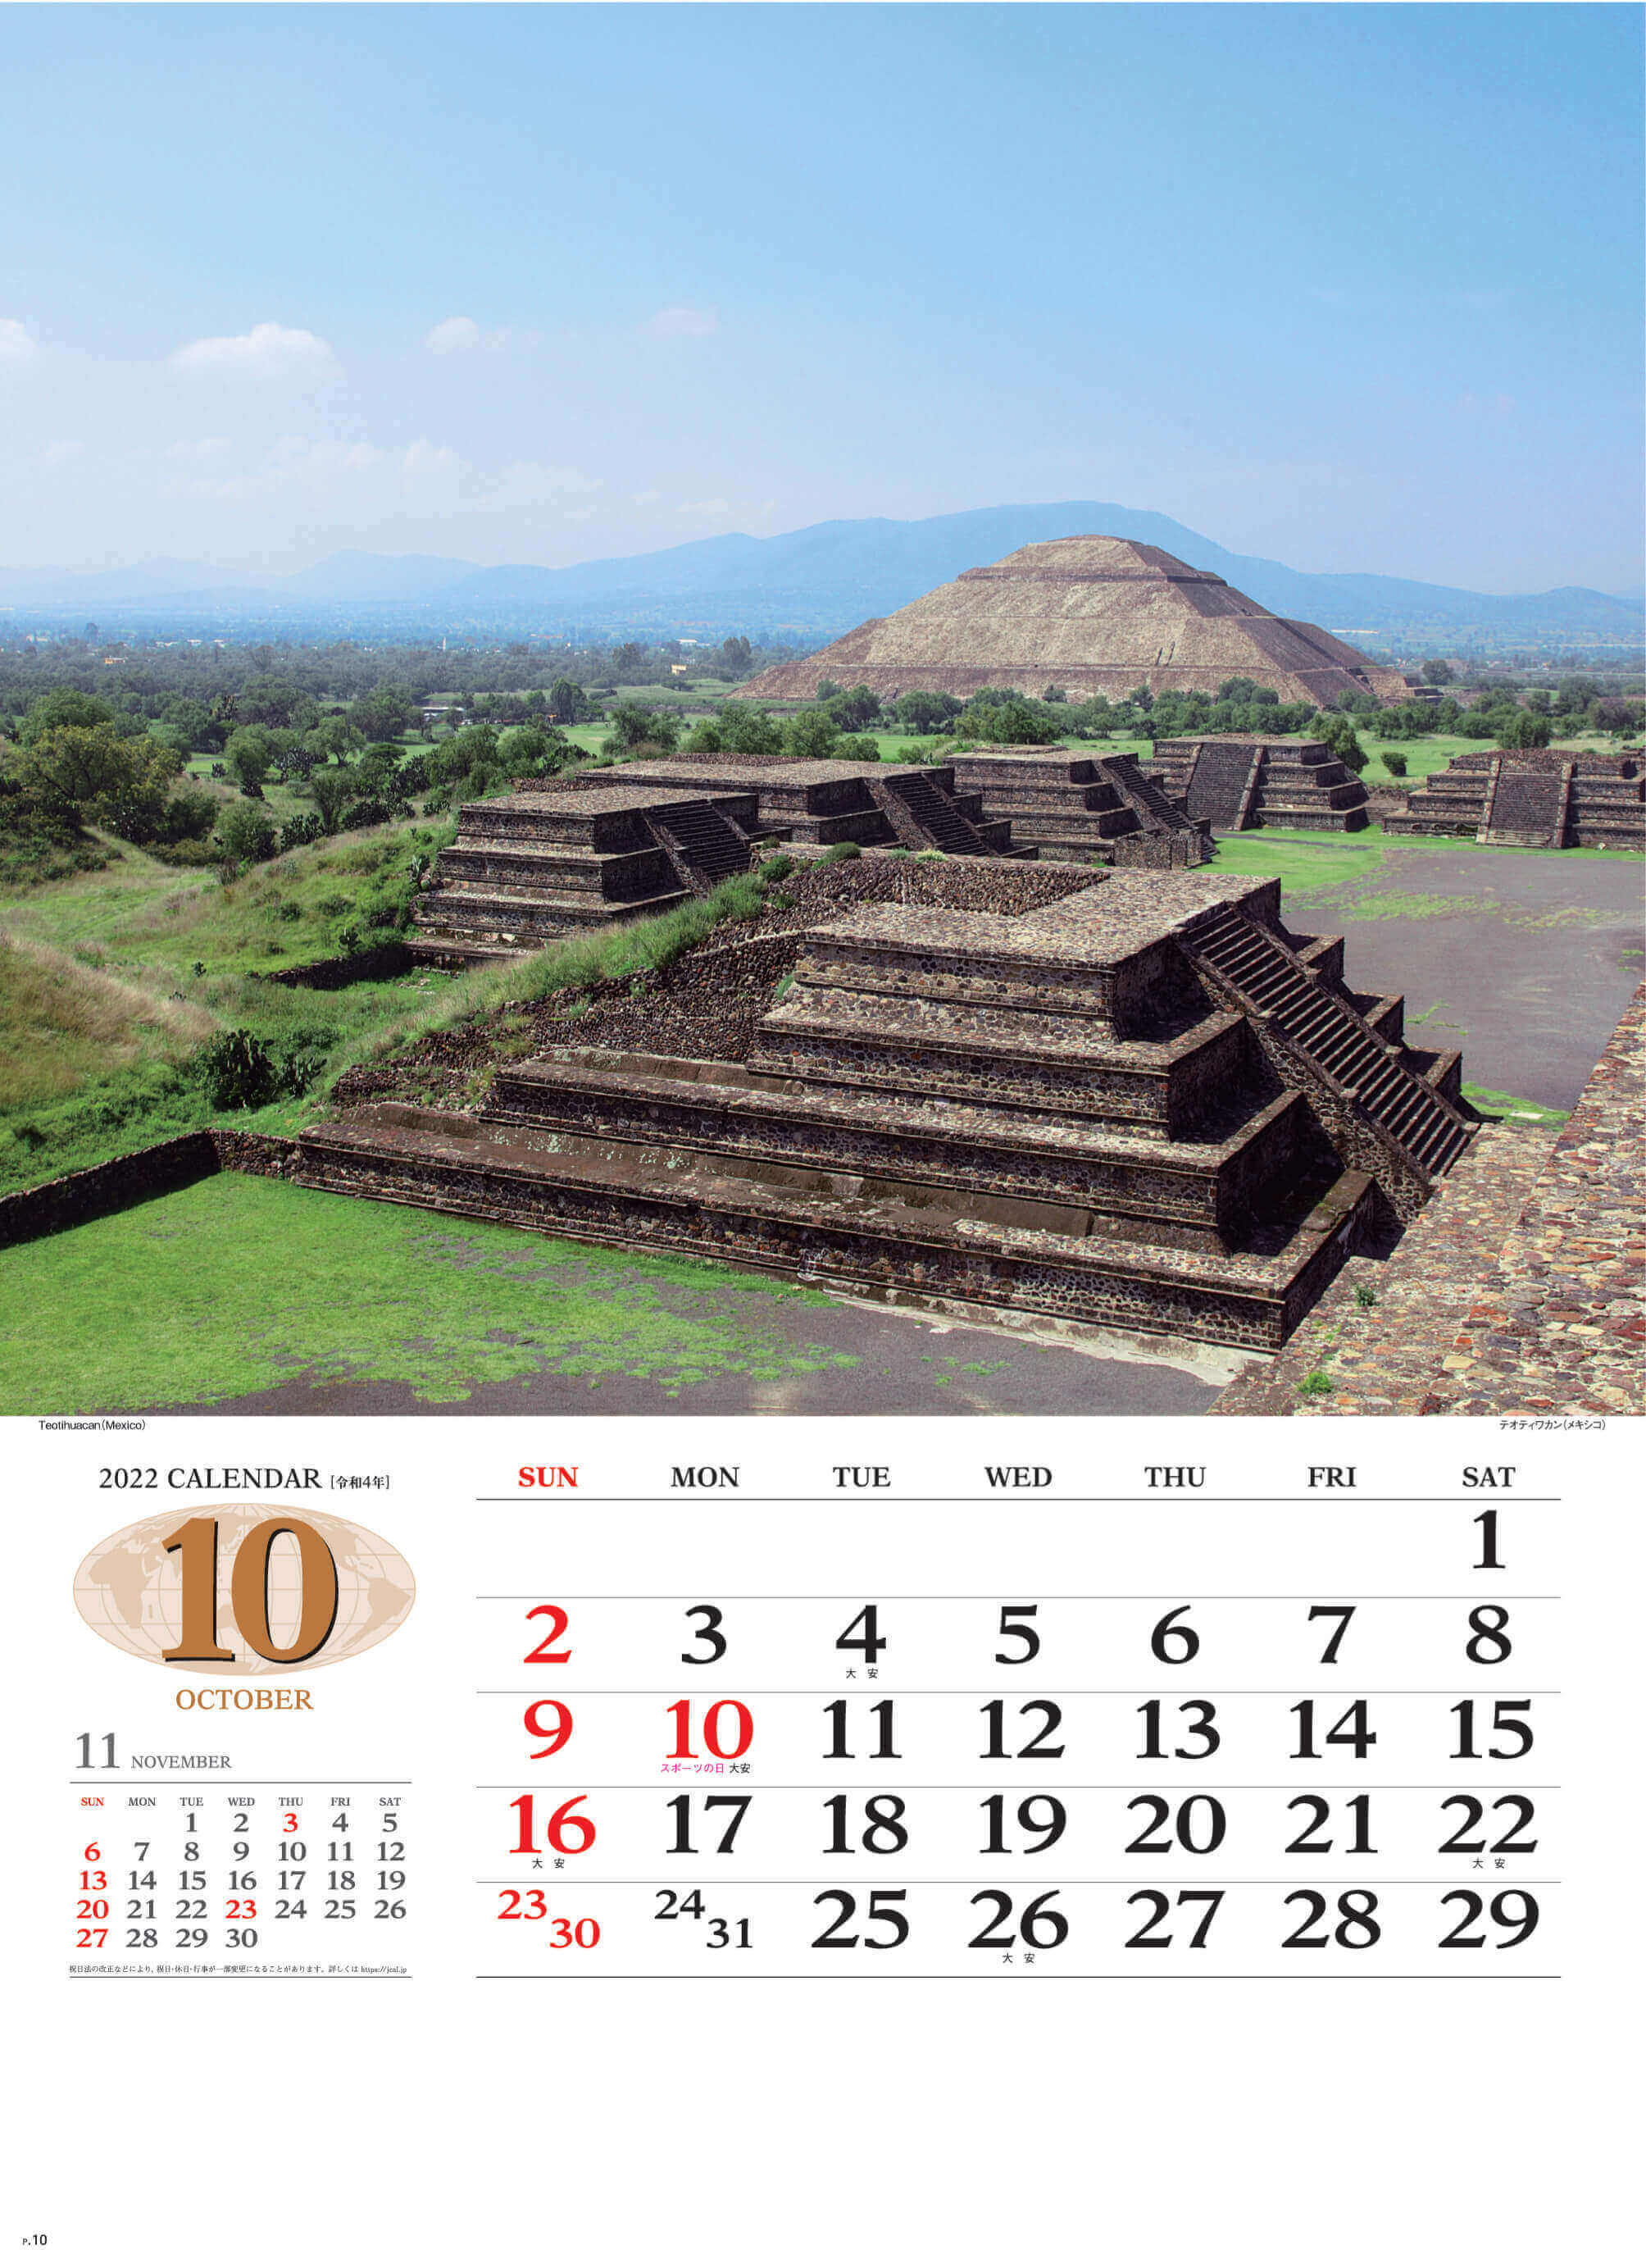 10月 テオティワカン メキシコ 世界の景観 2022年カレンダーの画像